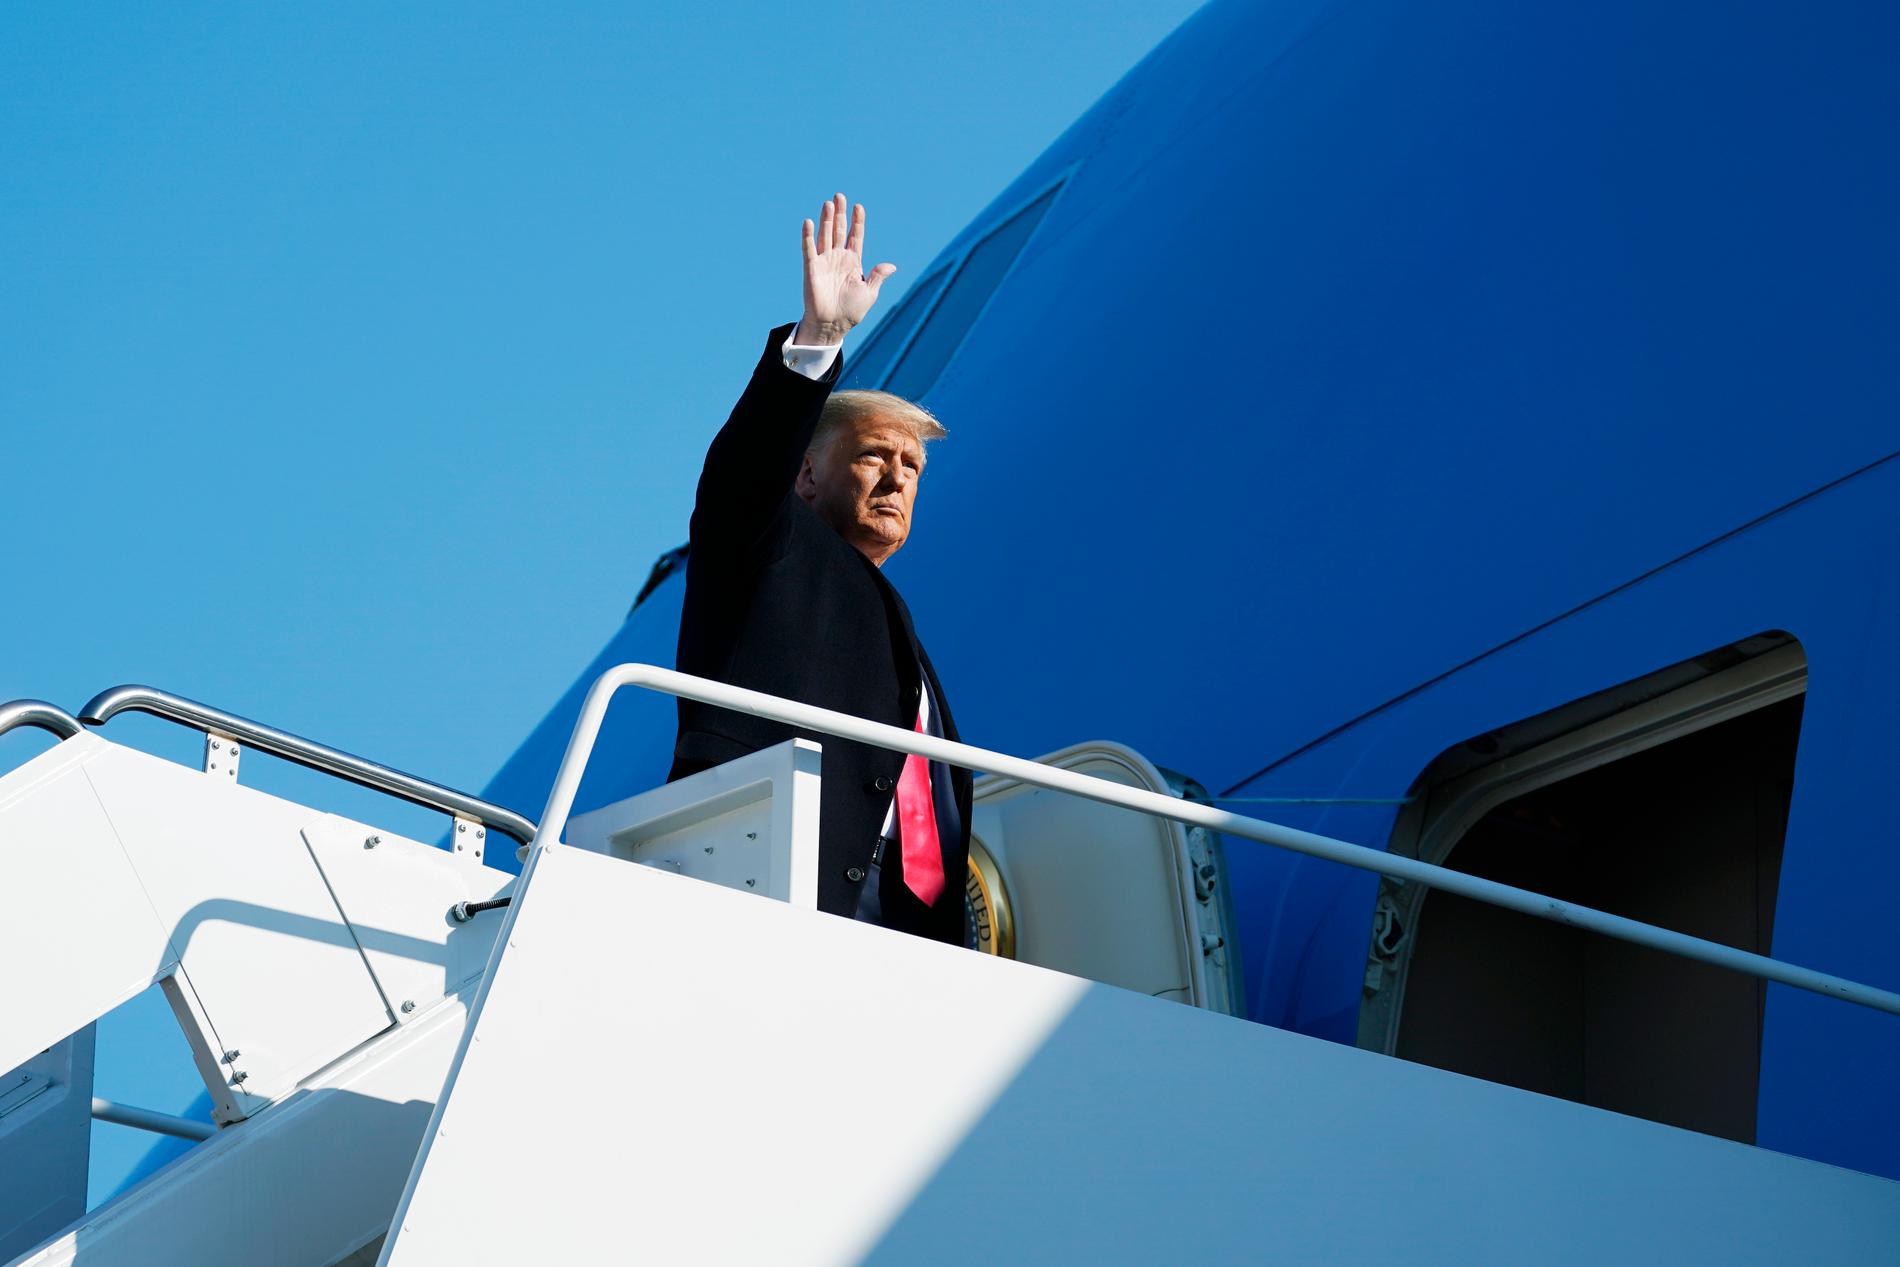 USA:s president Donald Trump väntas lämna Vita huset på onsdag några timmar innan hans efterträdare Joe Biden svärs in. Arkivbild från den 12 januari när Trump går ombord på Air Force One för att resa till Texas.